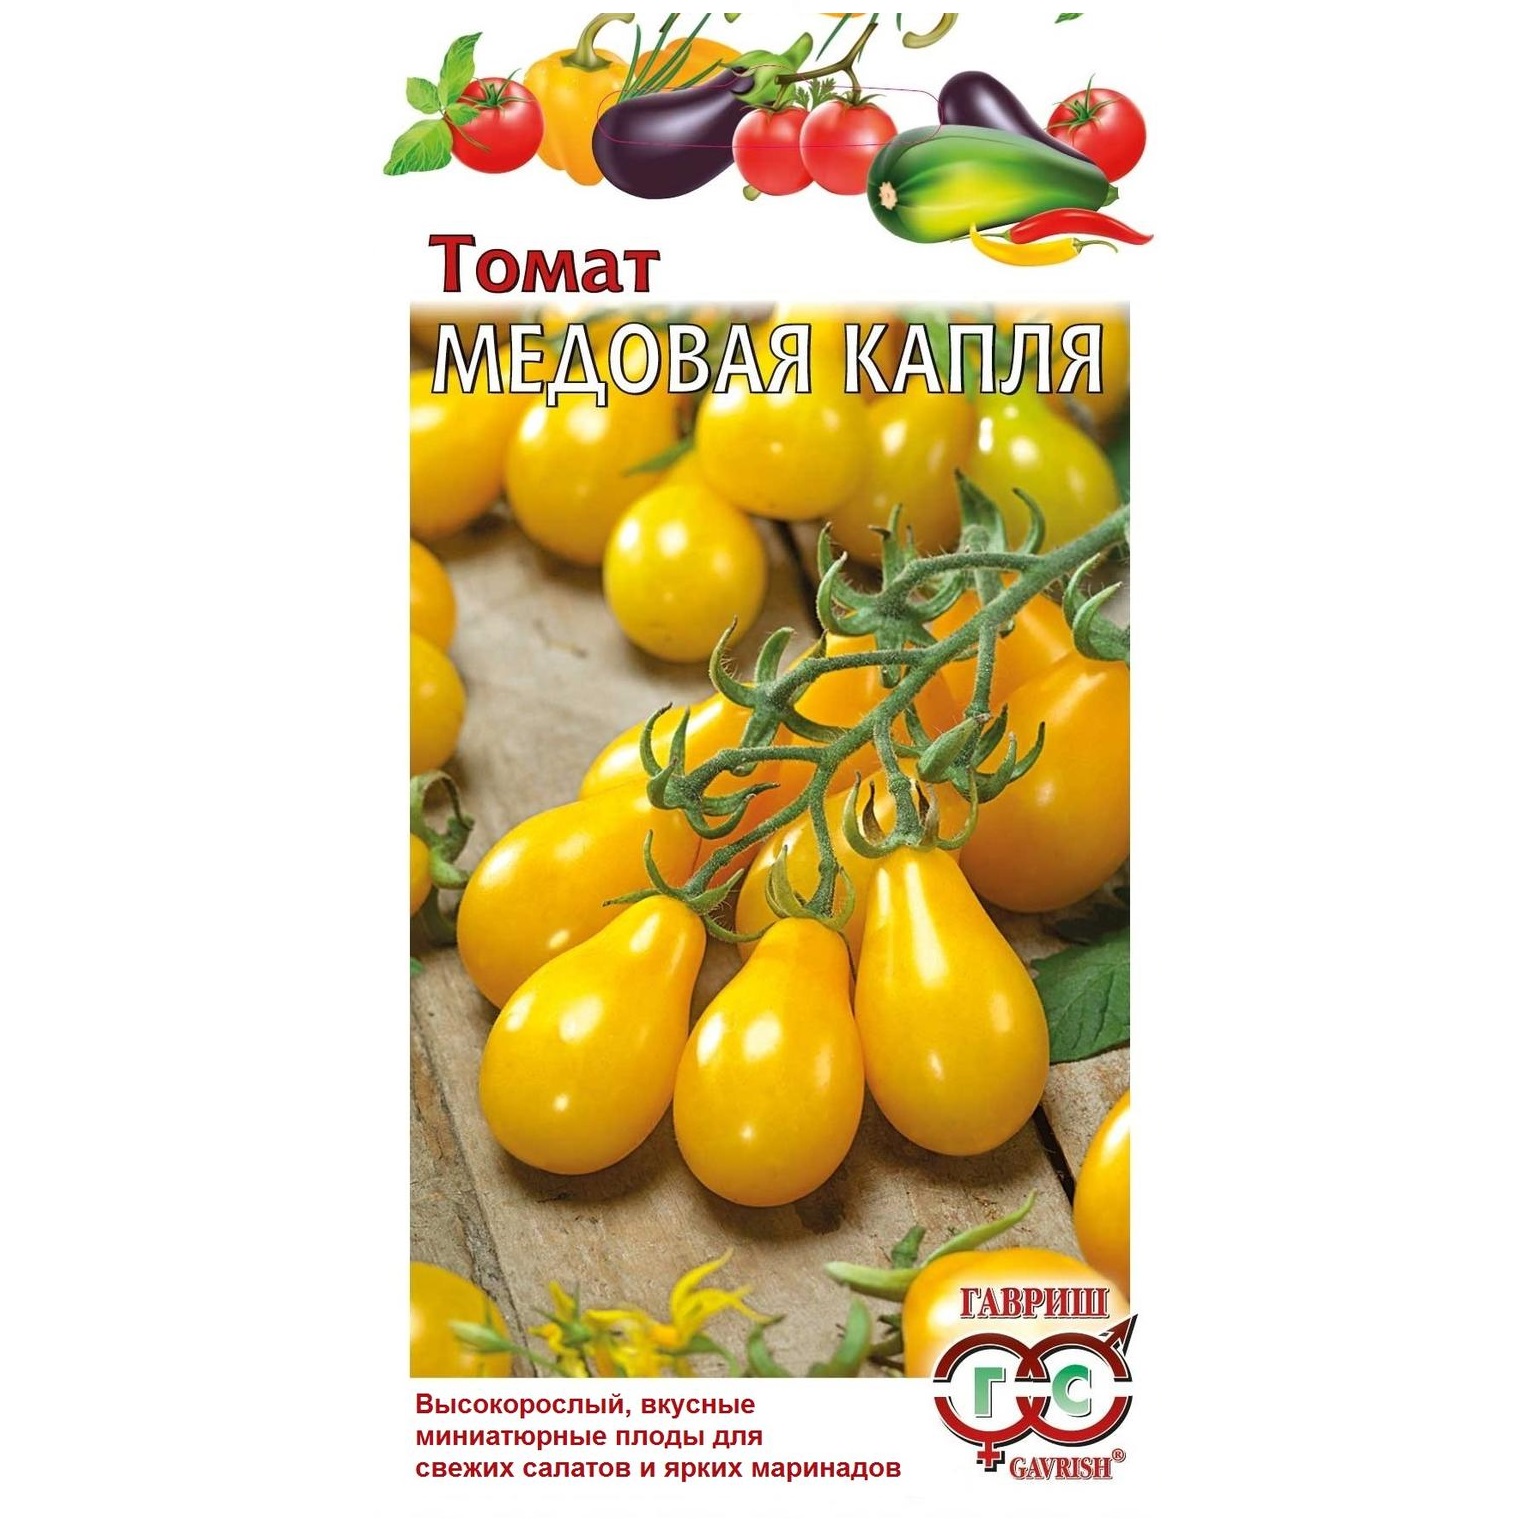 Описание сорта томата Медовая капля, его характеристика и урожайность